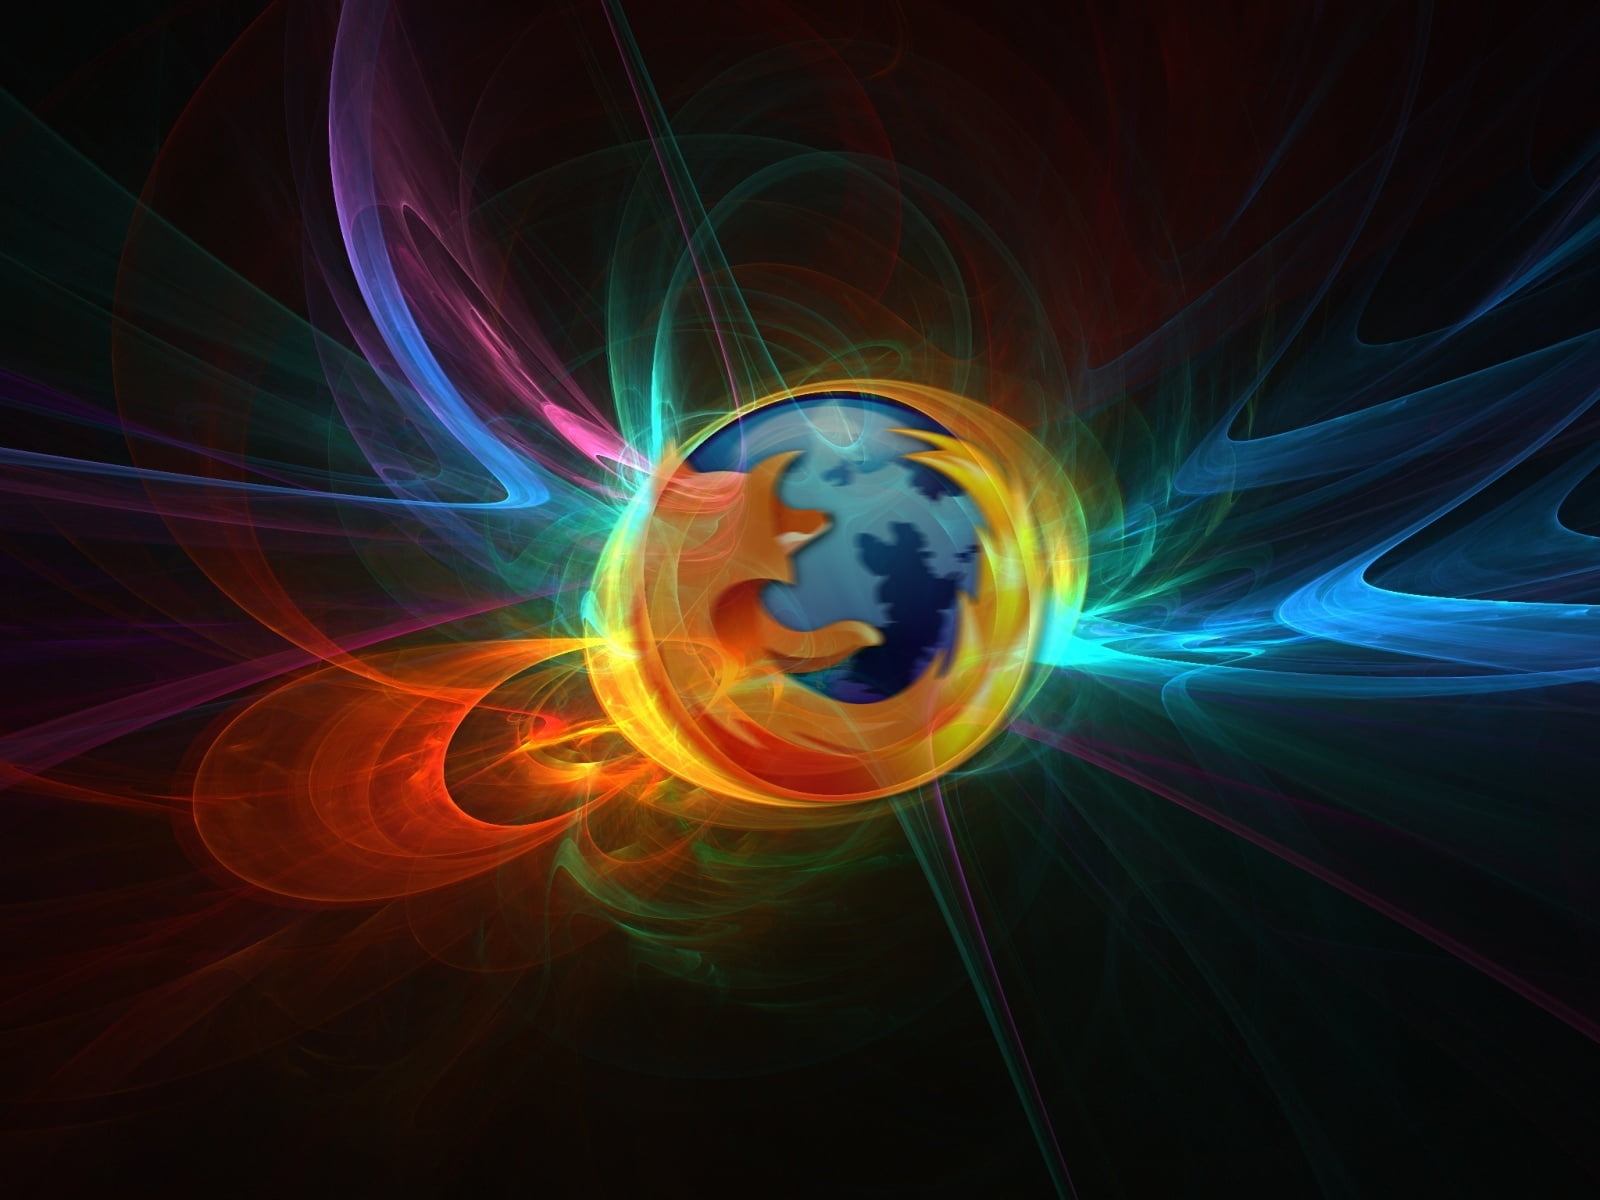 Abstract Firefox, Mozilla Firefox logo, Computers, motion, illuminated